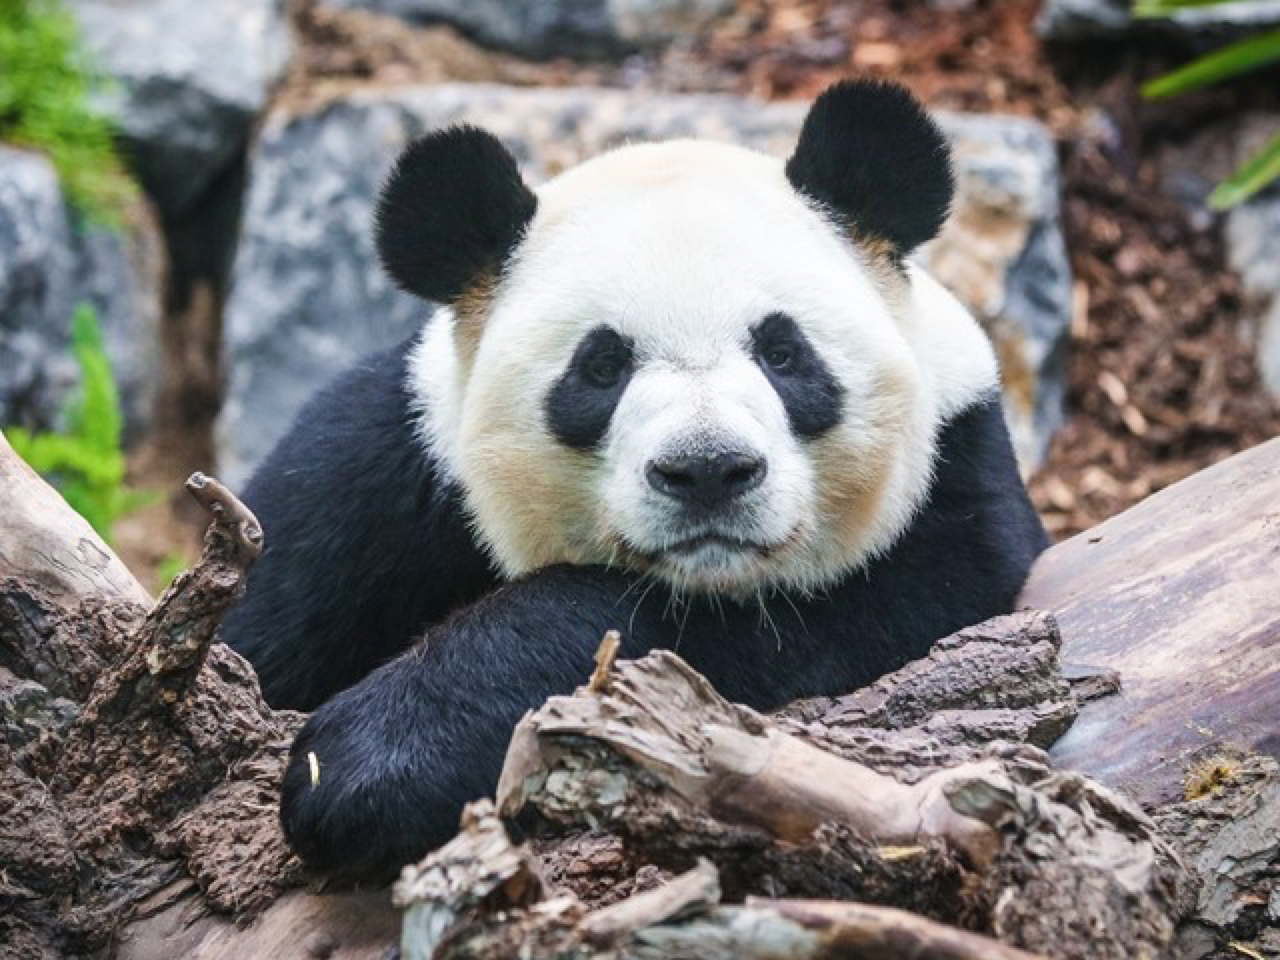 竹子供应不足旅加大熊猫将提前归国 基地:已了解动物园诉求